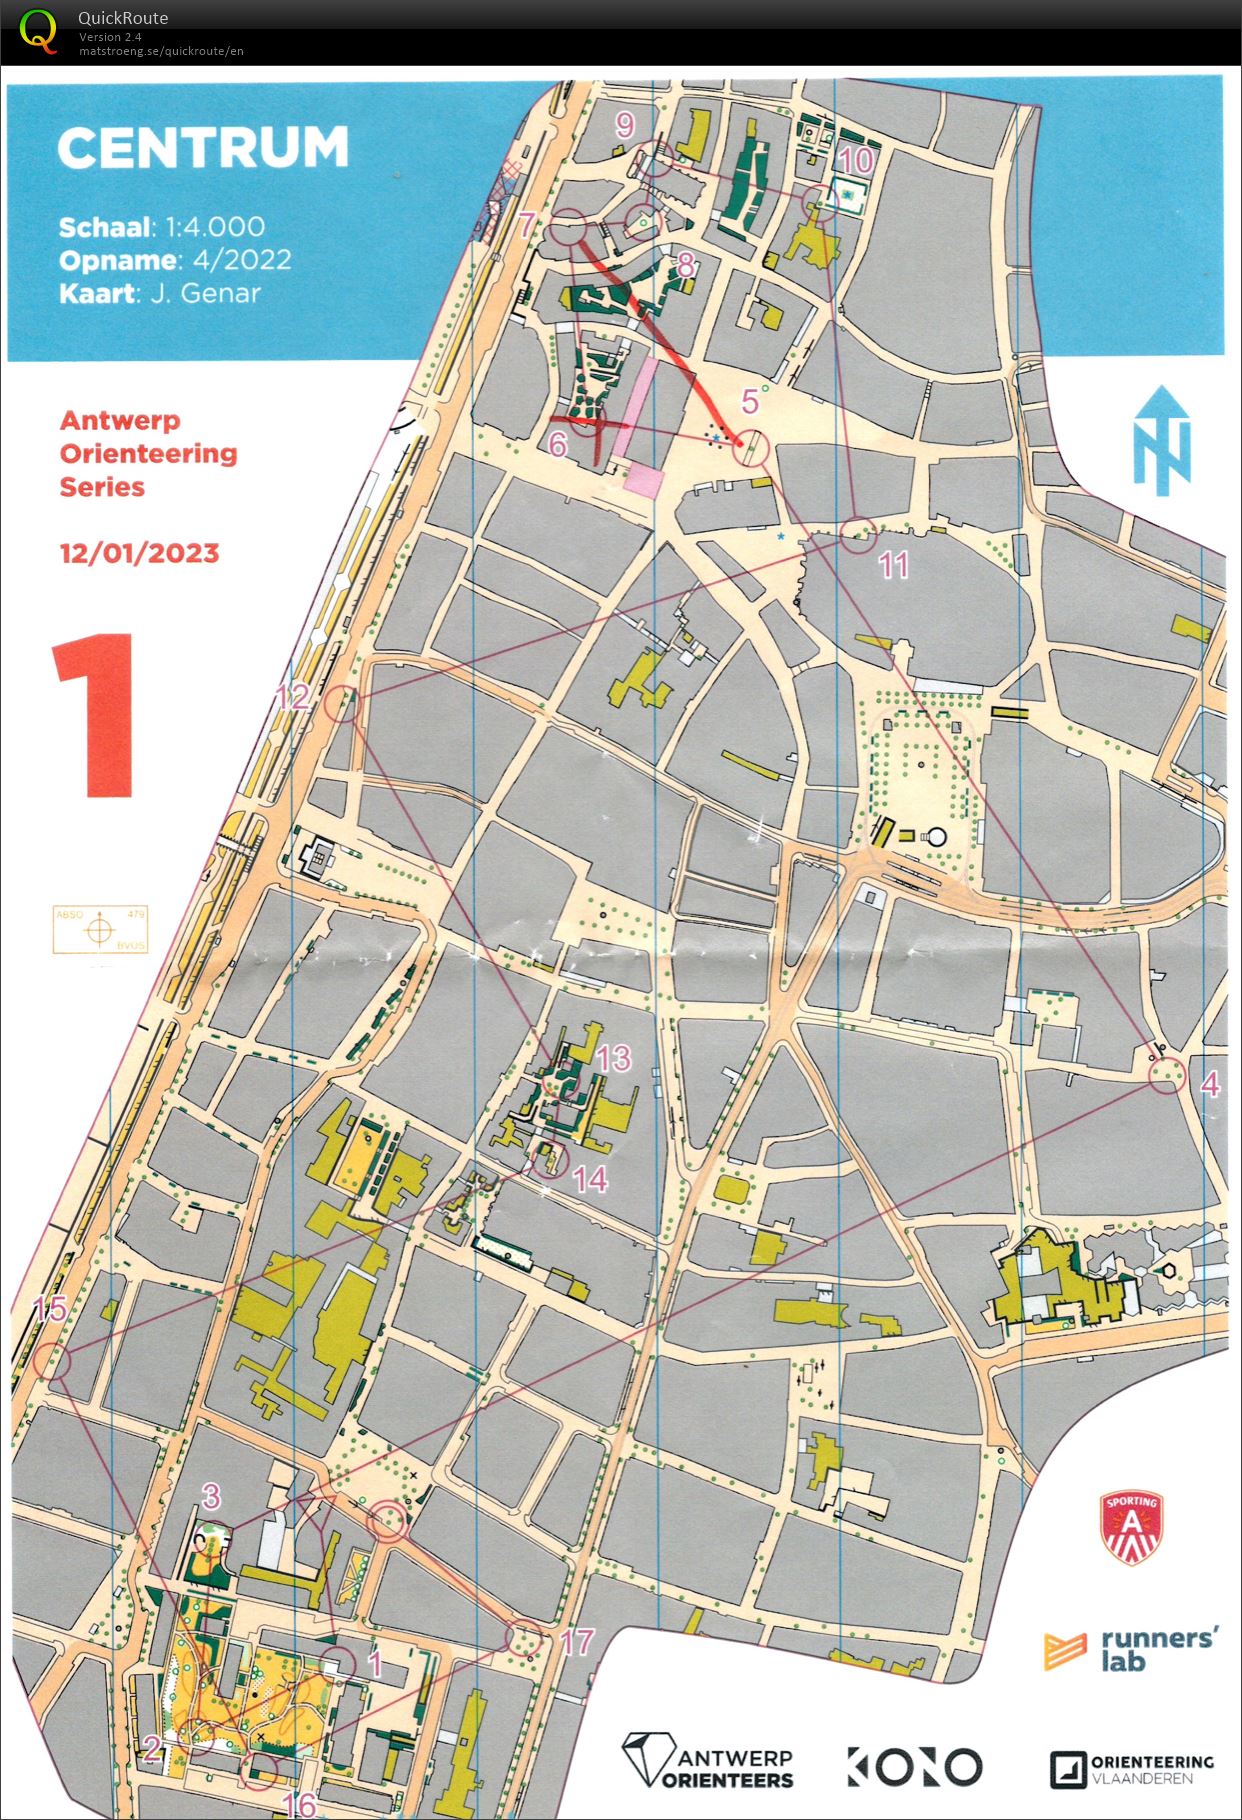 Antwerp Orienteering Series - Centrum - Lang (12.01.2023)